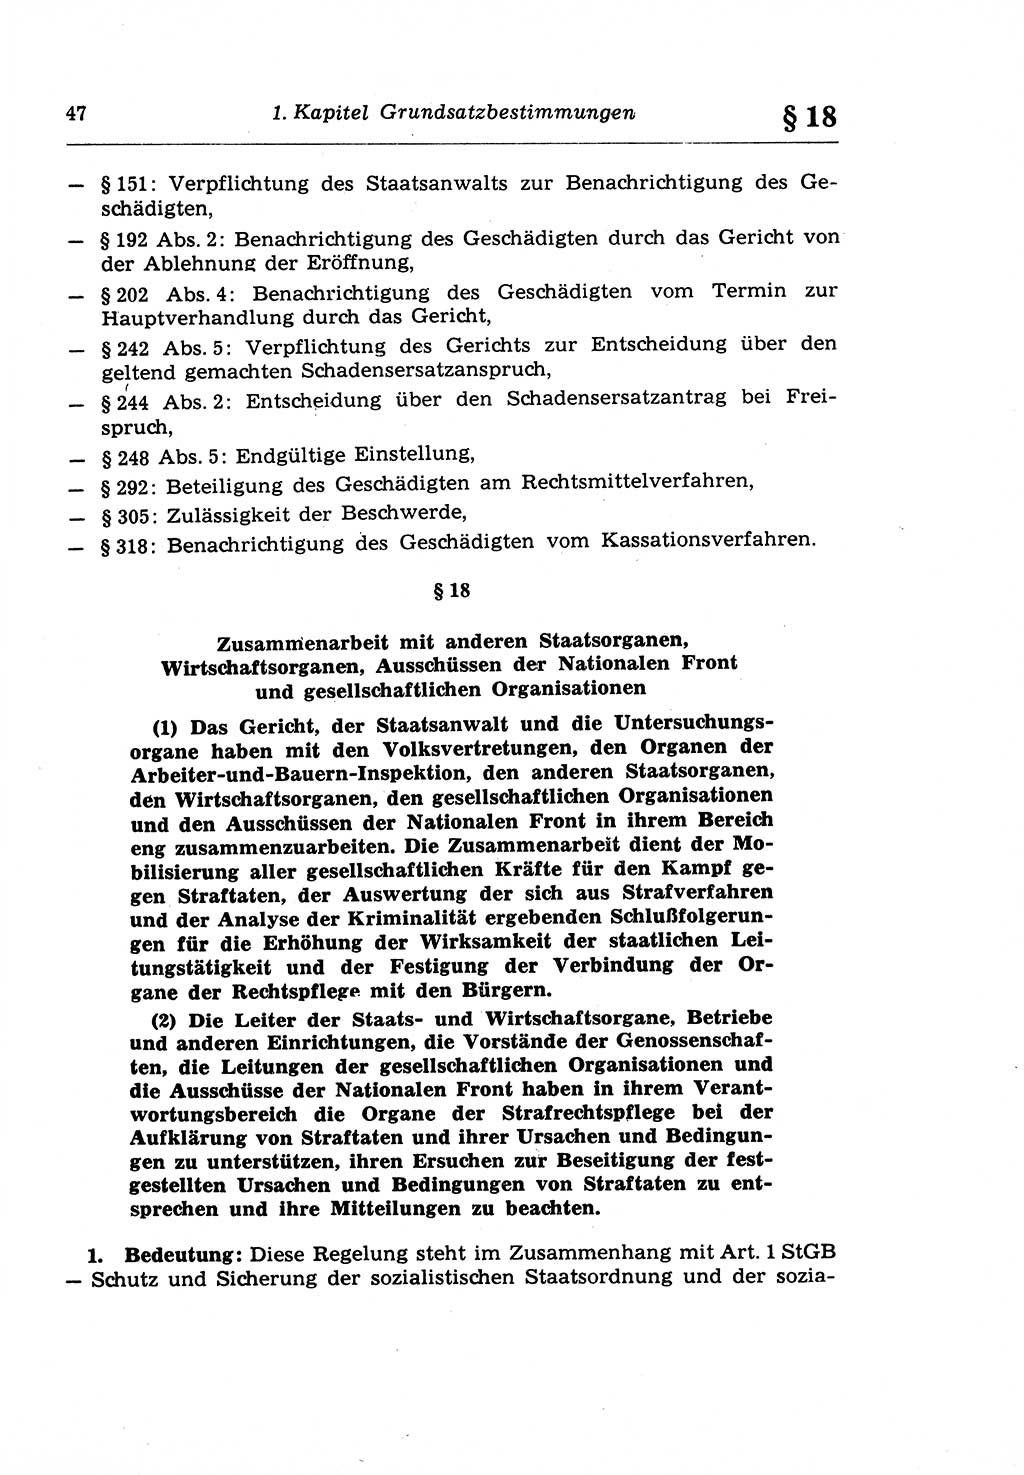 Strafprozeßrecht der DDR (Deutsche Demokratische Republik), Lehrkommentar zur Strafprozeßordnung (StPO) 1968, Seite 47 (Strafprozeßr. DDR Lehrkomm. StPO 19688, S. 47)